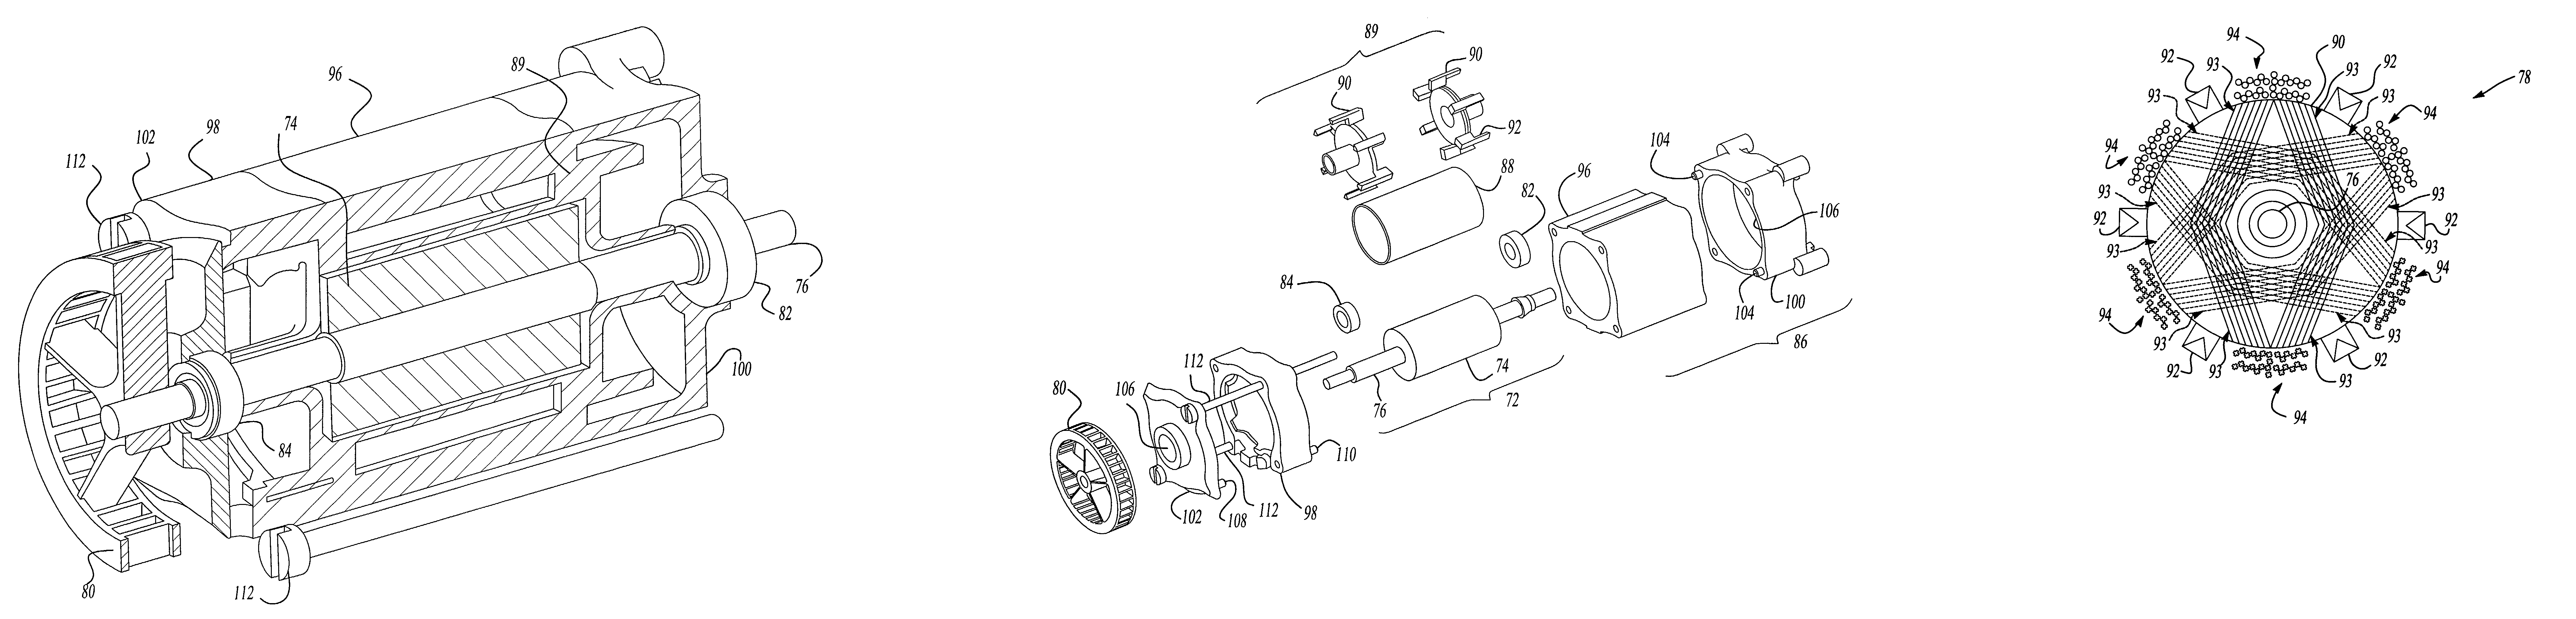 Brushless DC motor